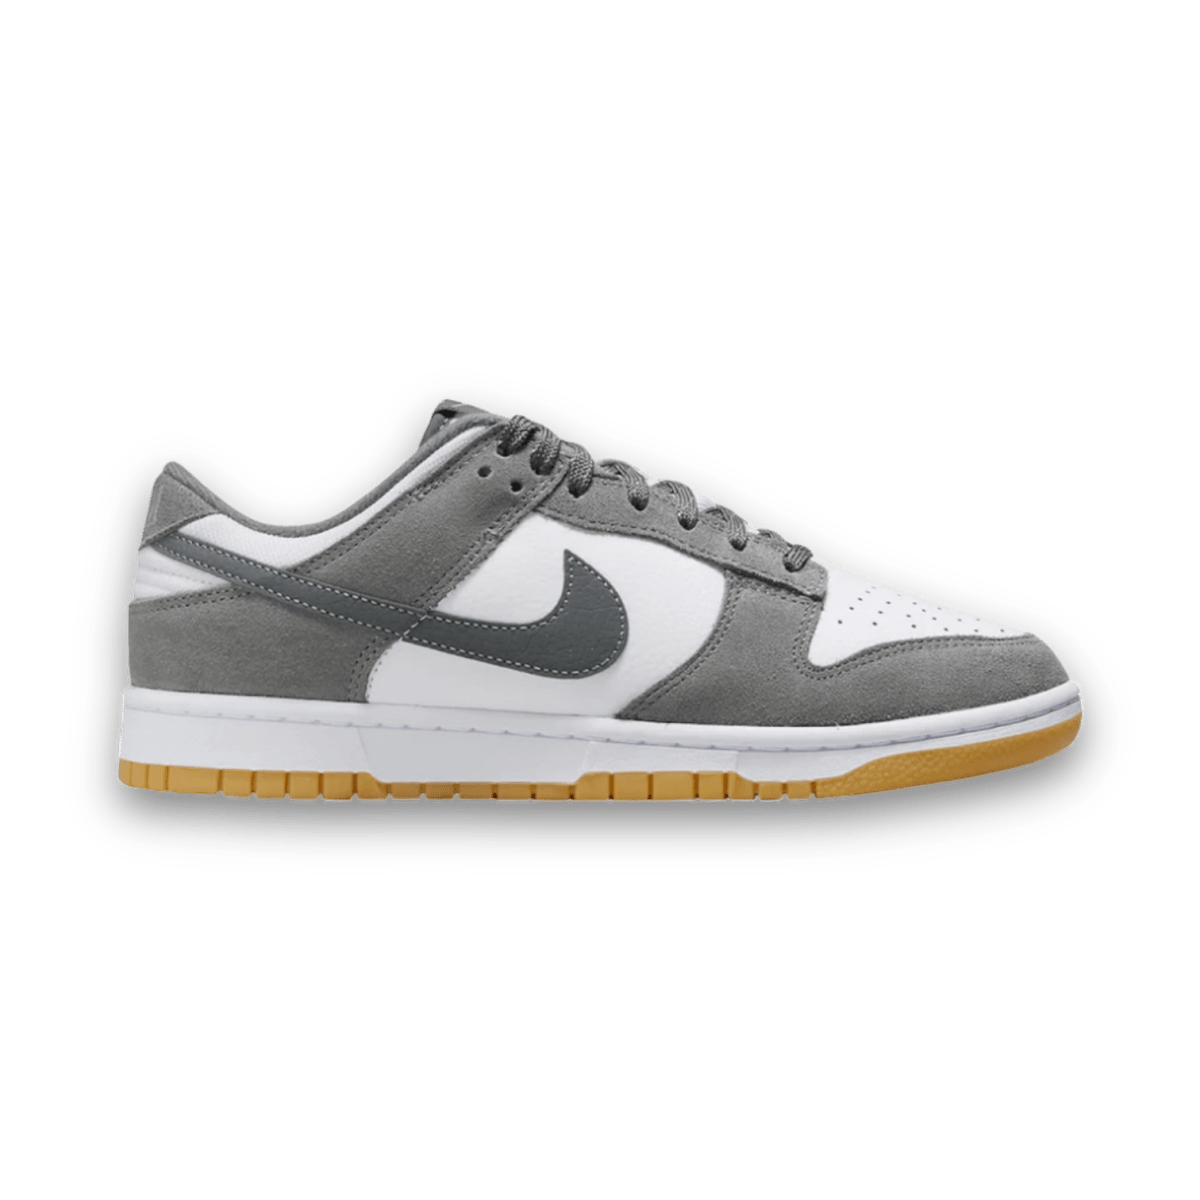 Dunk Low 'Smoke Grey Gum' - Grade School - Low Sneaker - Jawns on Fire Sneakers & Streetwear